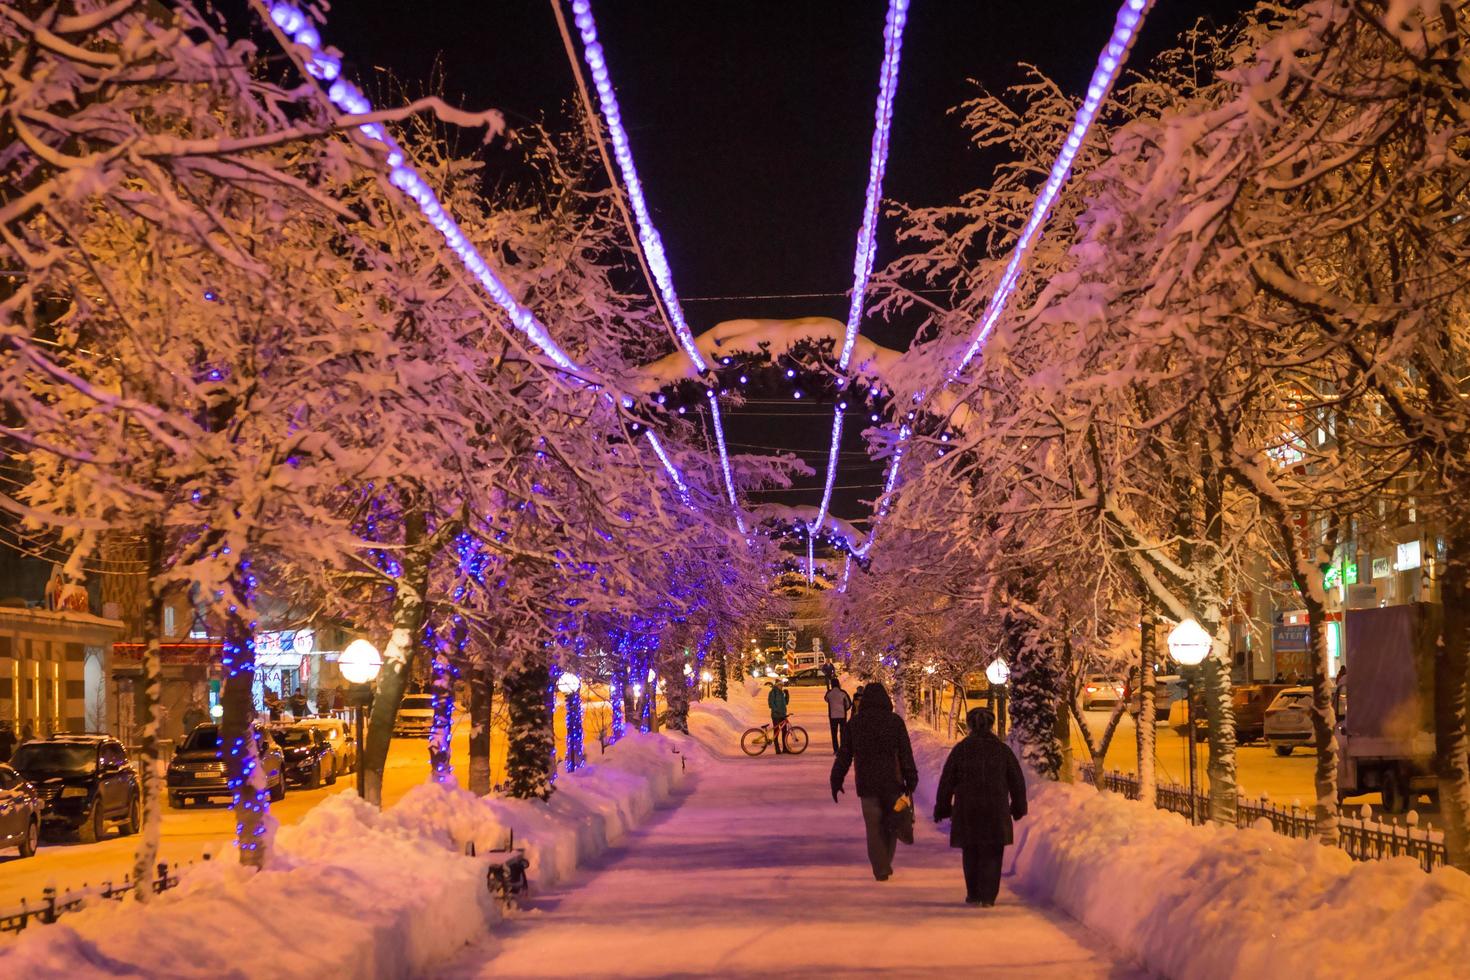 el callejón festivo está decorado con luces de hadas de guirnaldas para navidad y año nuevo. decoración al aire libre de las calles de la ciudad, gente caminando. kaluga, rusia, diciembre de 2020. foto